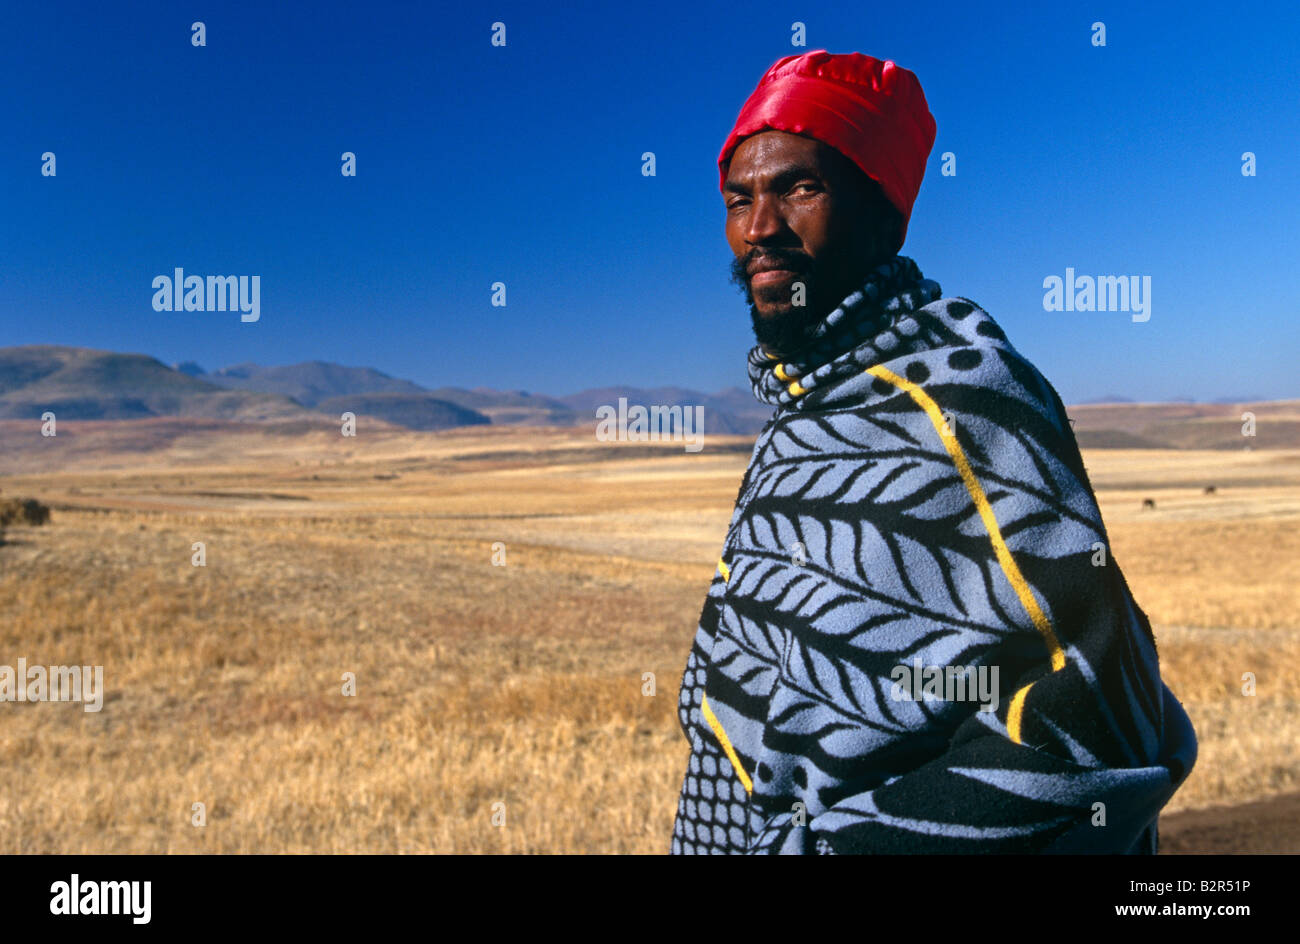 L'homme enveloppé dans une couverture basotho in rural Landscape, portrait,  Lesotho, Afrique Photo Stock - Alamy